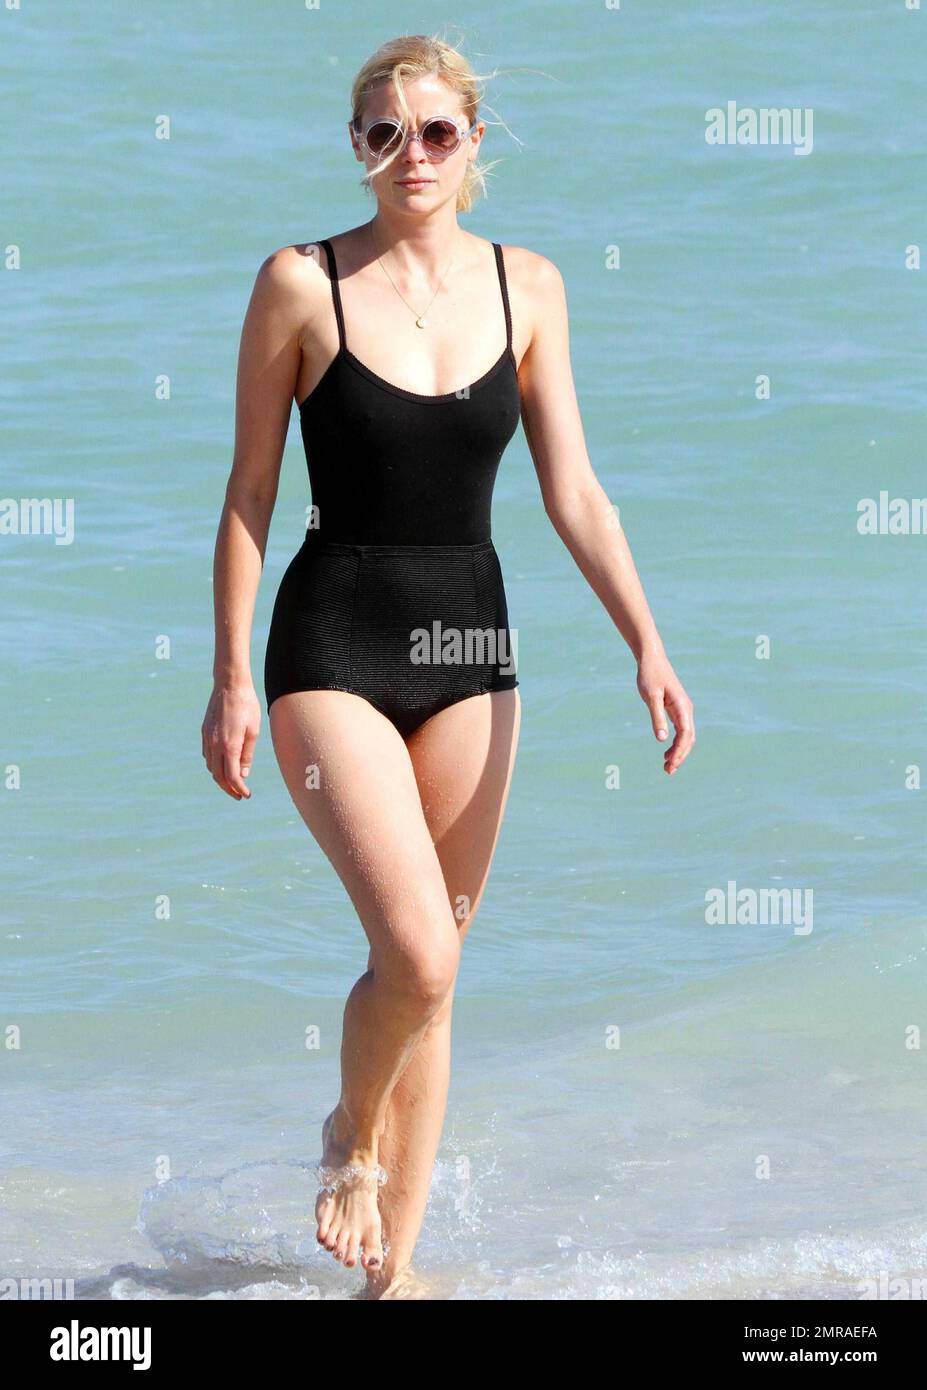 L'actrice et mannequin Jaime King montre son incroyable personnage dans un  maillot de bain noir d'une pièce de style vintage tout en profitant d'une  baignade dans les eaux turquoise de Miami Beach